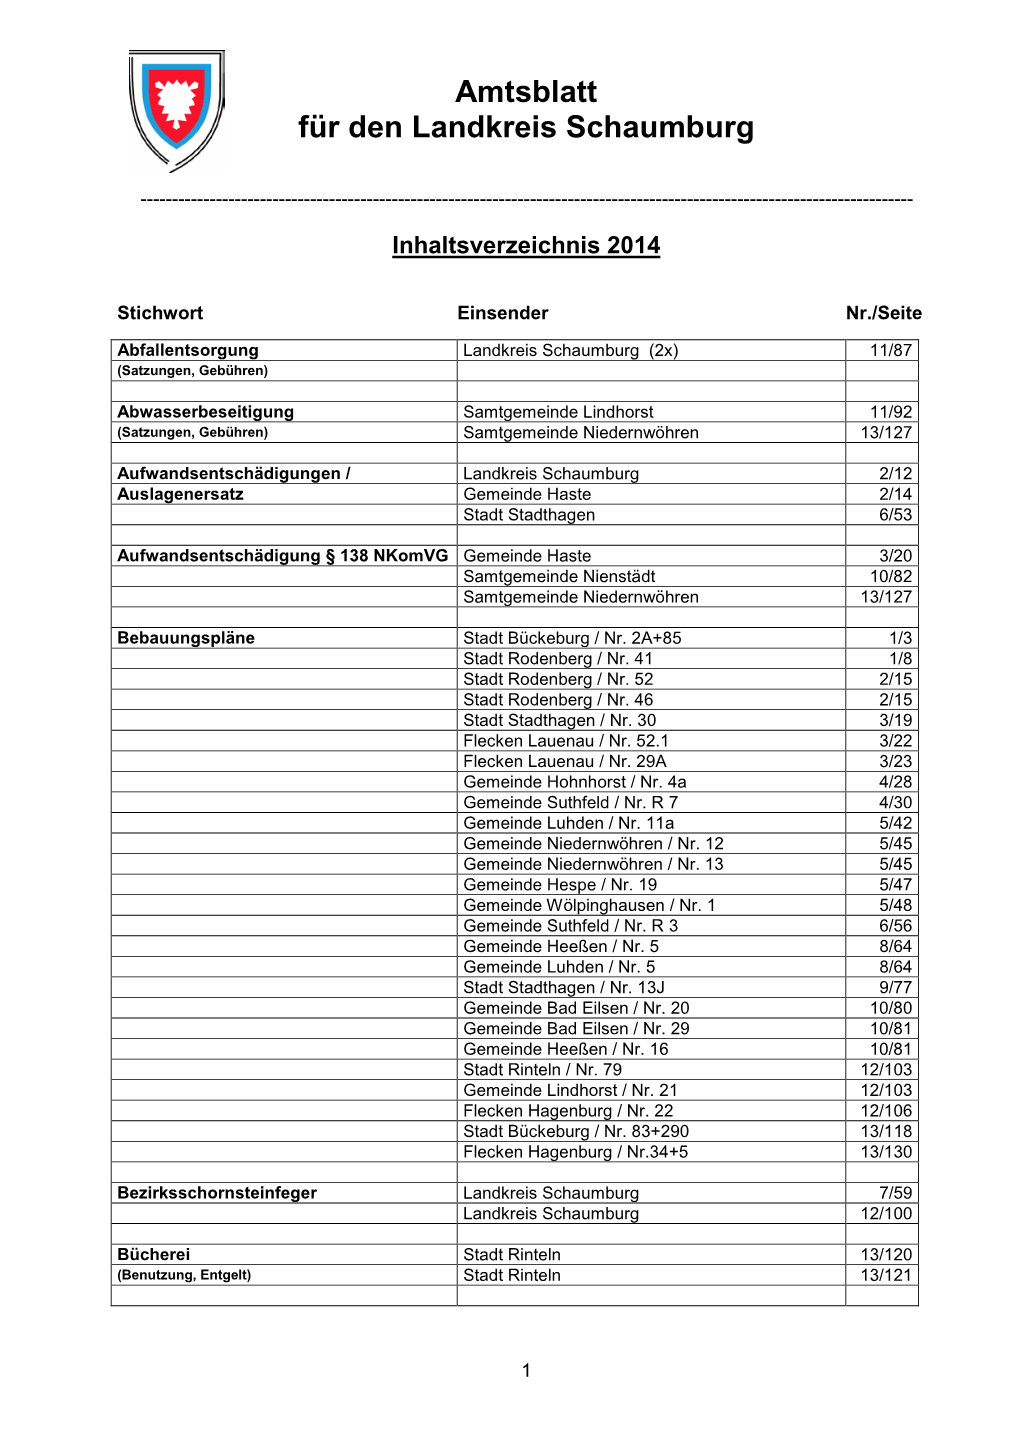 Inhaltsverzeichnis Amtsblatt 2014